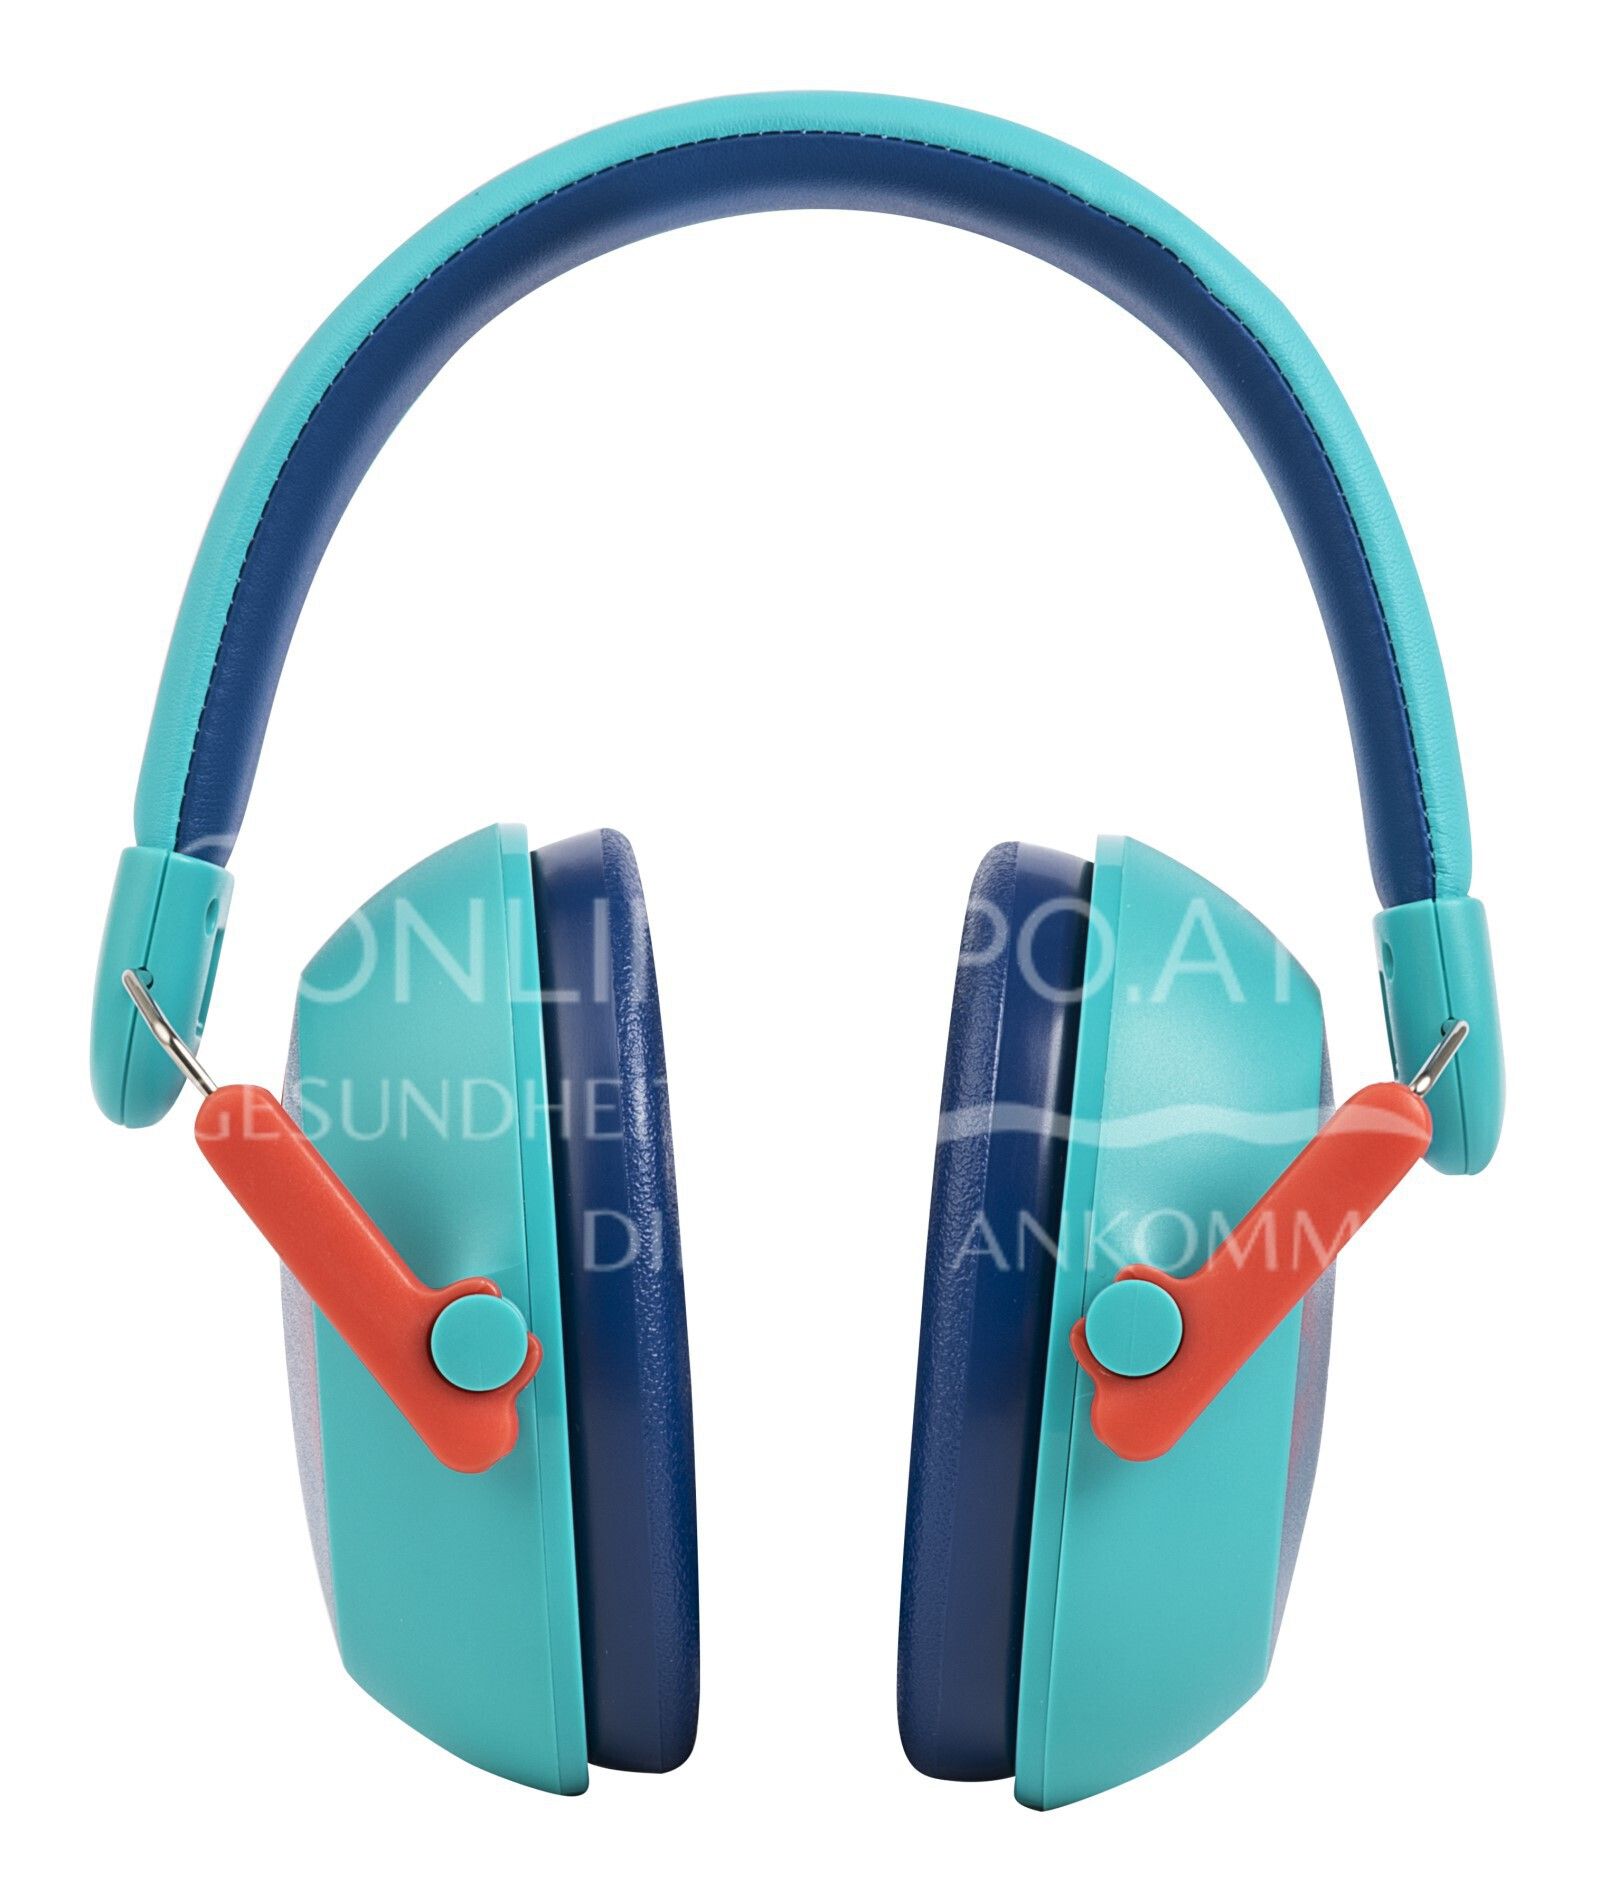 3M™Gehörschutz für Kinder mit Gehörschutz PKIDSP-TEAL-E, türkis (87-98 dB)